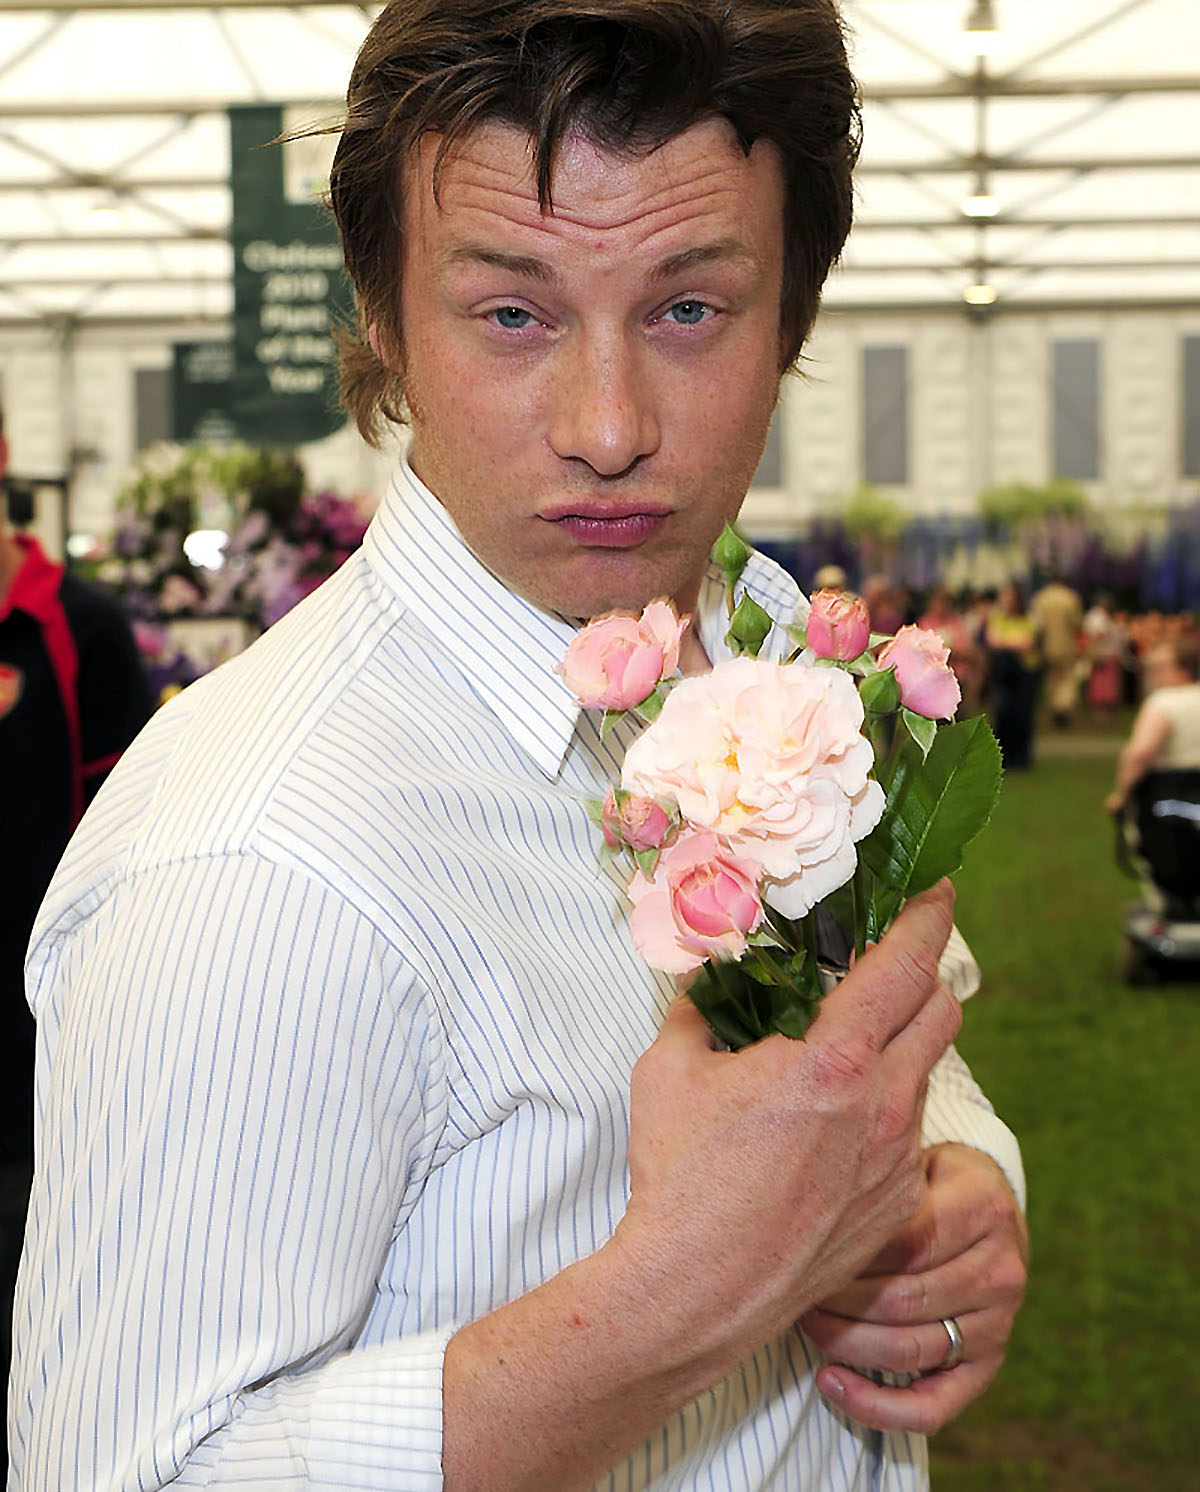 Jamie Oliver: unindo música e comida pelo social, no Big Feastival. Foto: Divulgação/celebitchy.com